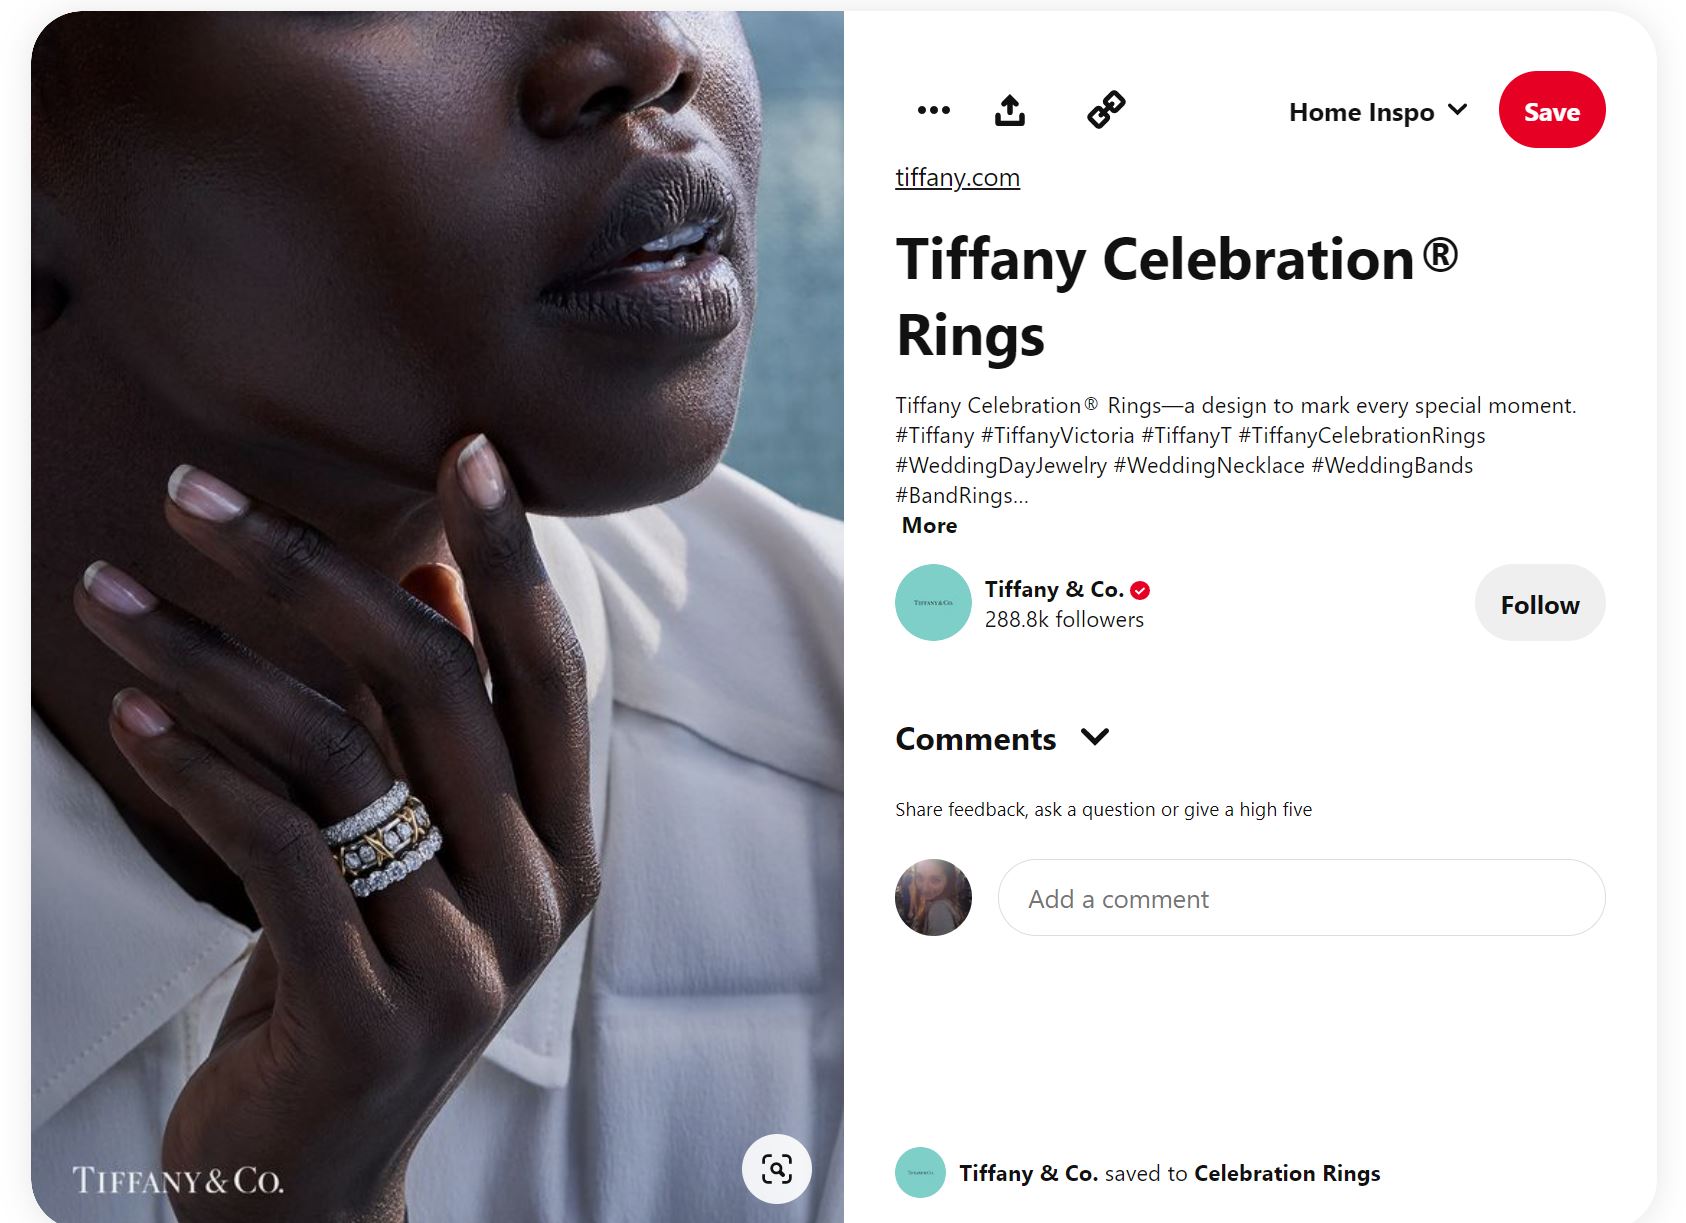 Social Media Marketing Strategy of Tiffany & Co.